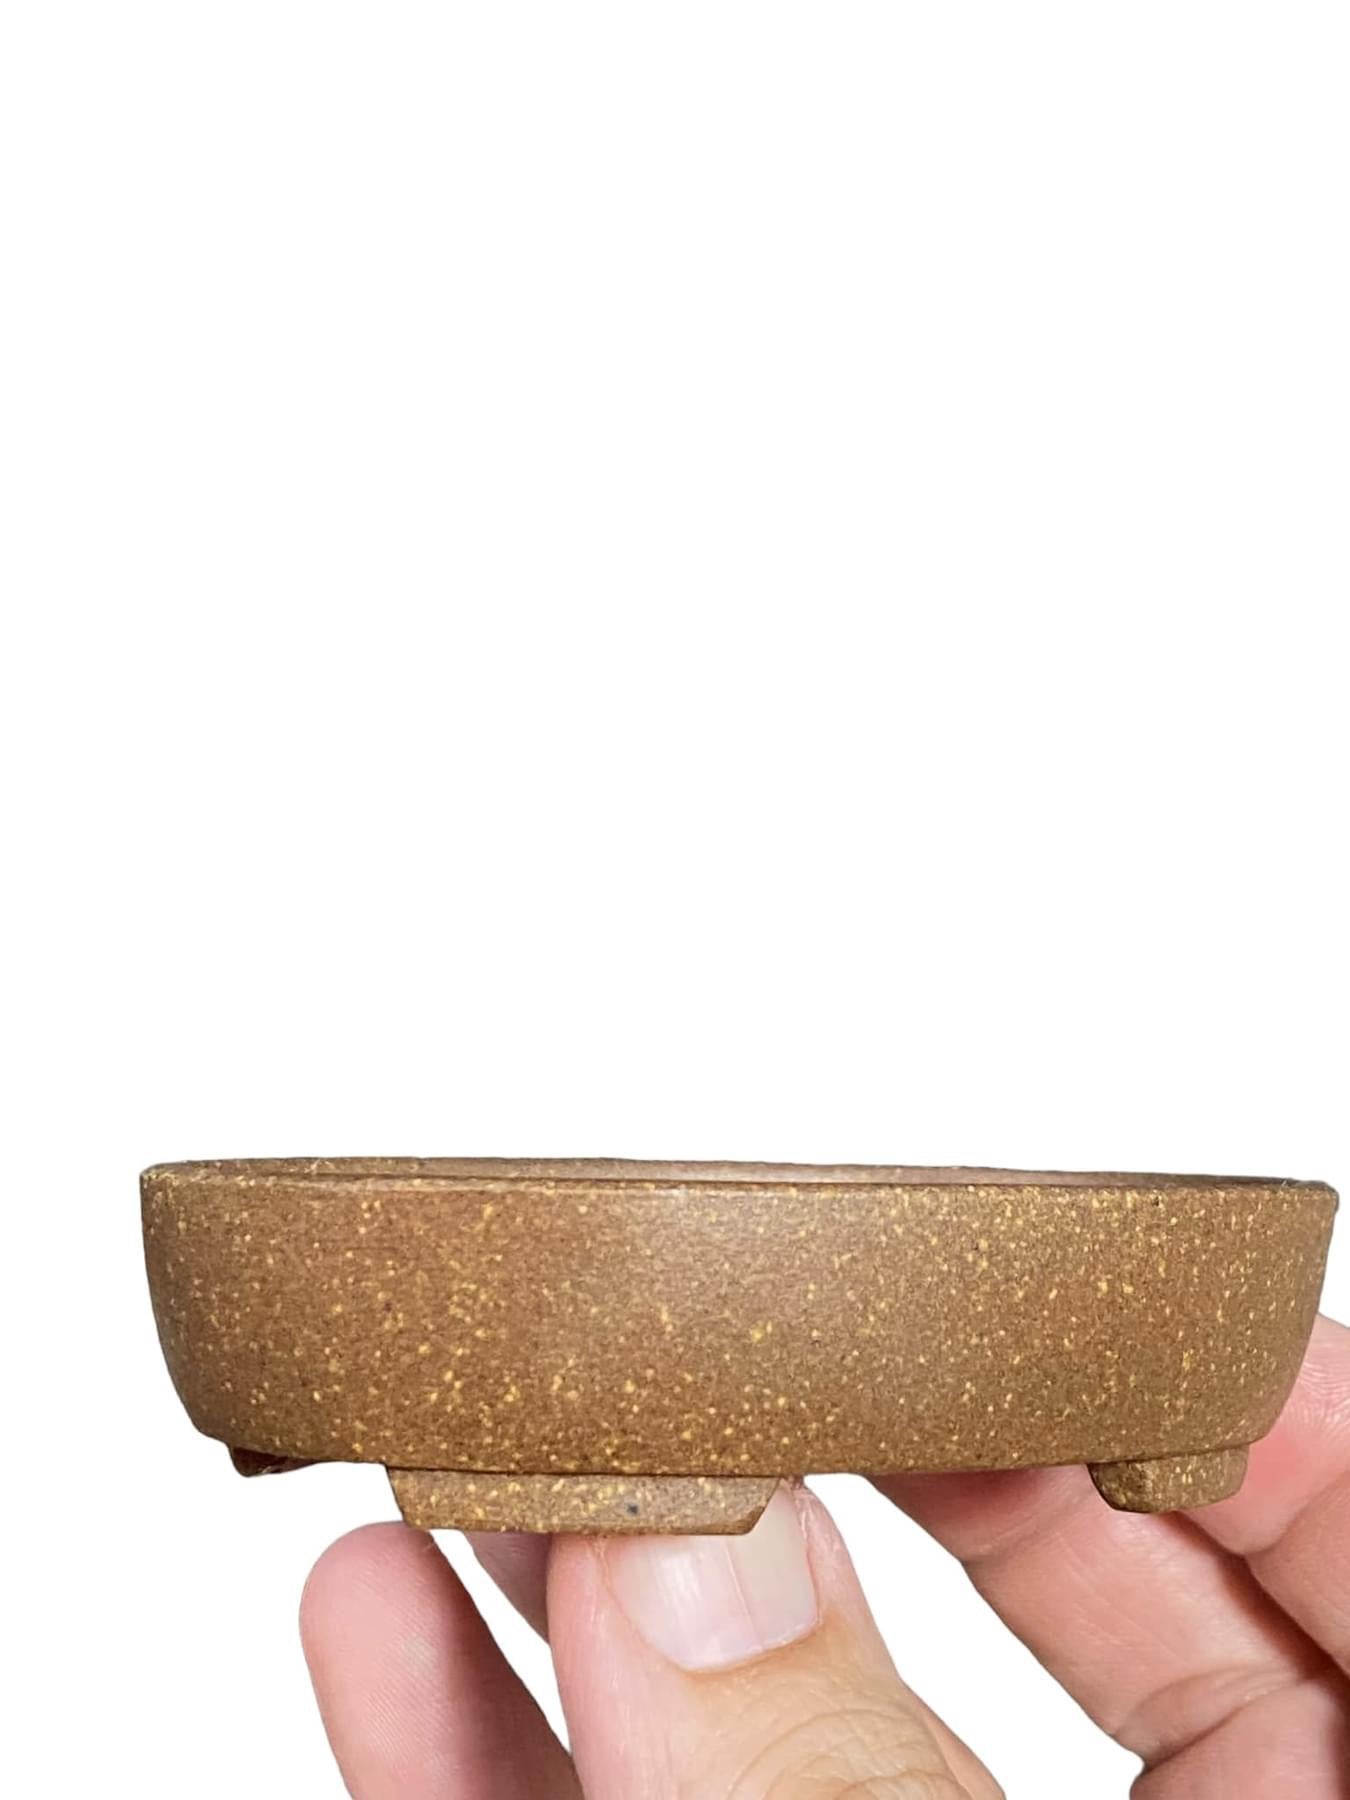 Mituyama - Unglazed Oval Bonsai Pot (3-1/2” wide)